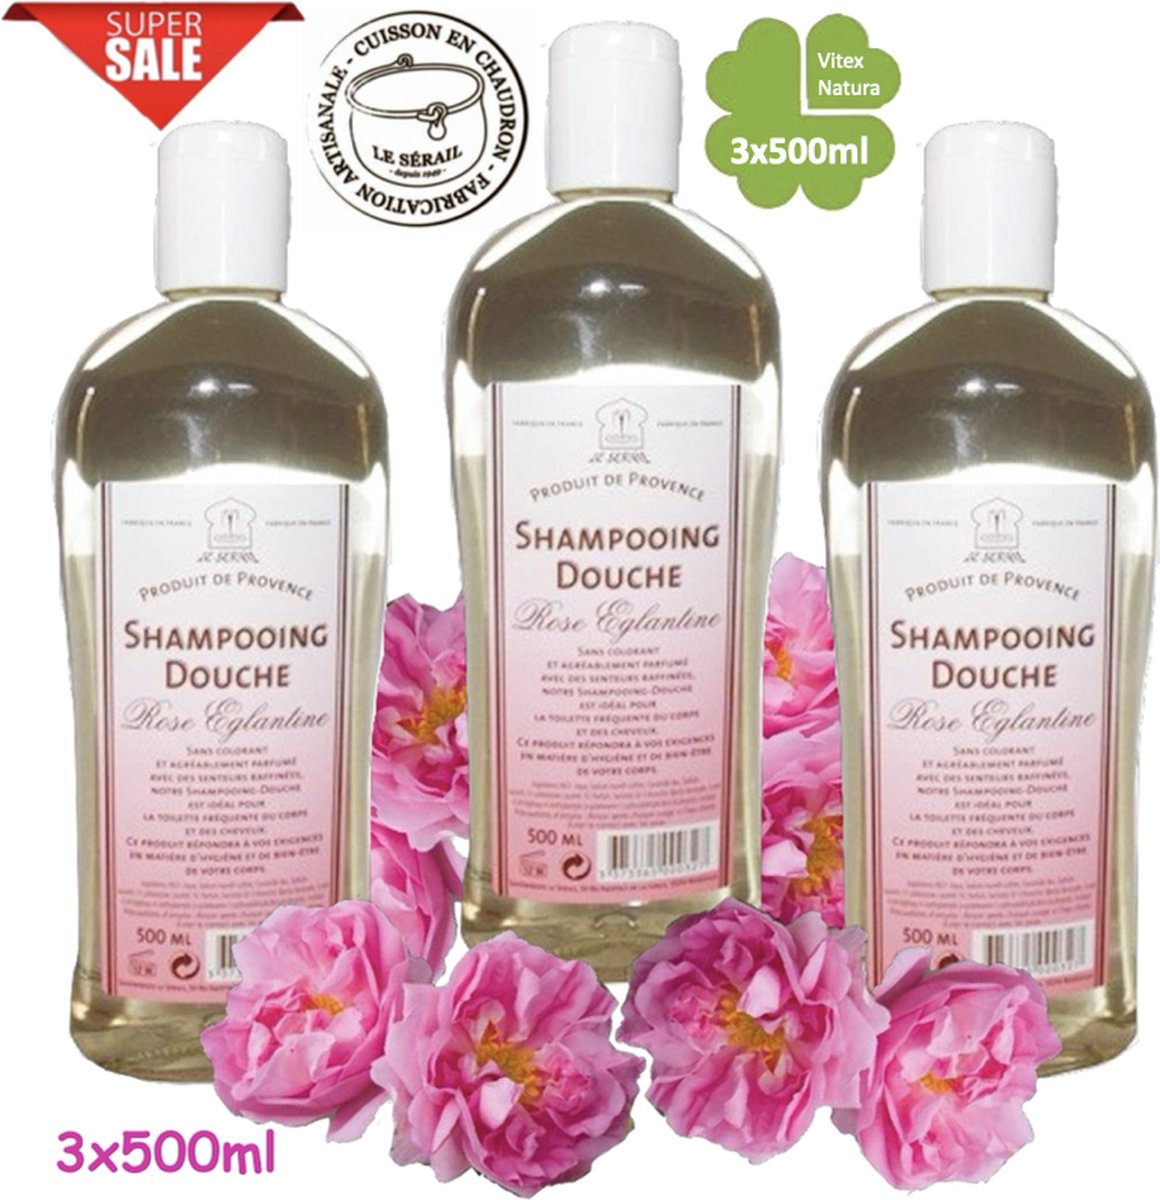 Echte ROZEN shampoo douche 3x500ml VOORDEEL pakket. Biologisch ecologisch. Le Serail. HEERLIJK GEURENDE Originele Marseille zeep.